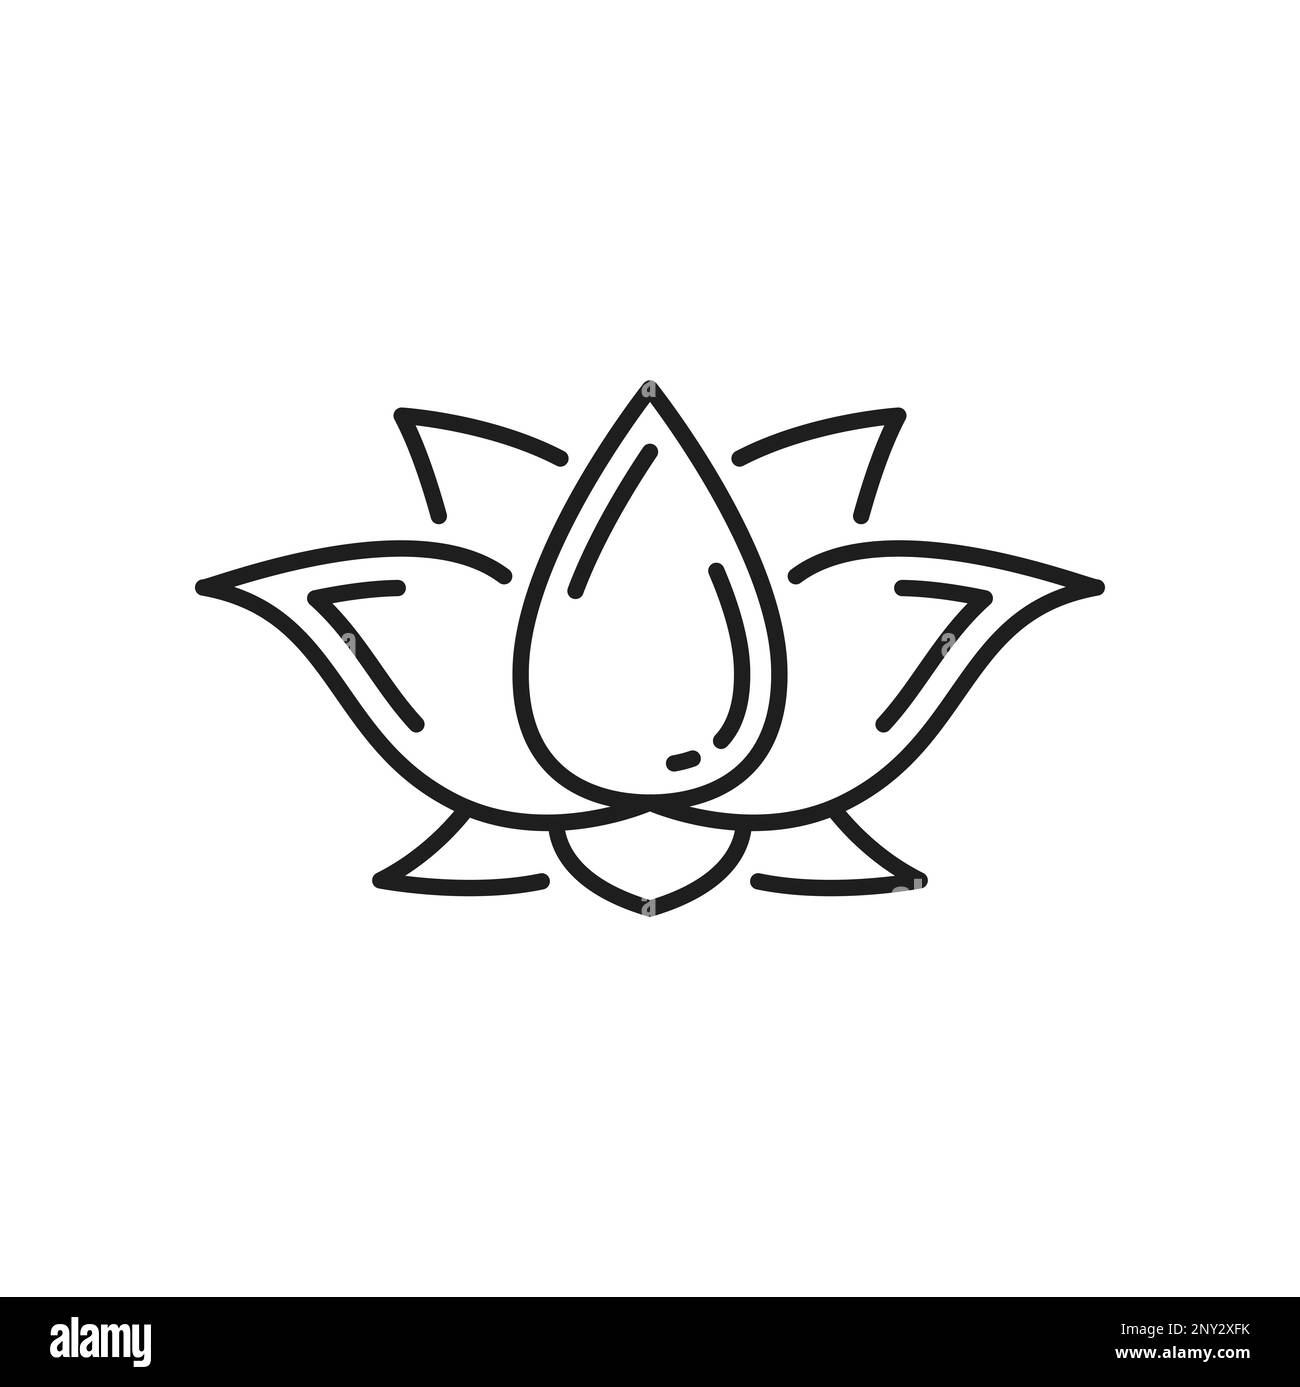 Buddhismus Religion Lotus Symbol, buddhistisches Zeichen der Meditation und Zen, Vektorsymbol. Tibetischer Buddhismus Dharma und spirituelle Erleuchtung oder Chakra-Symbol der Lotus-Padma-Blume Stock Vektor